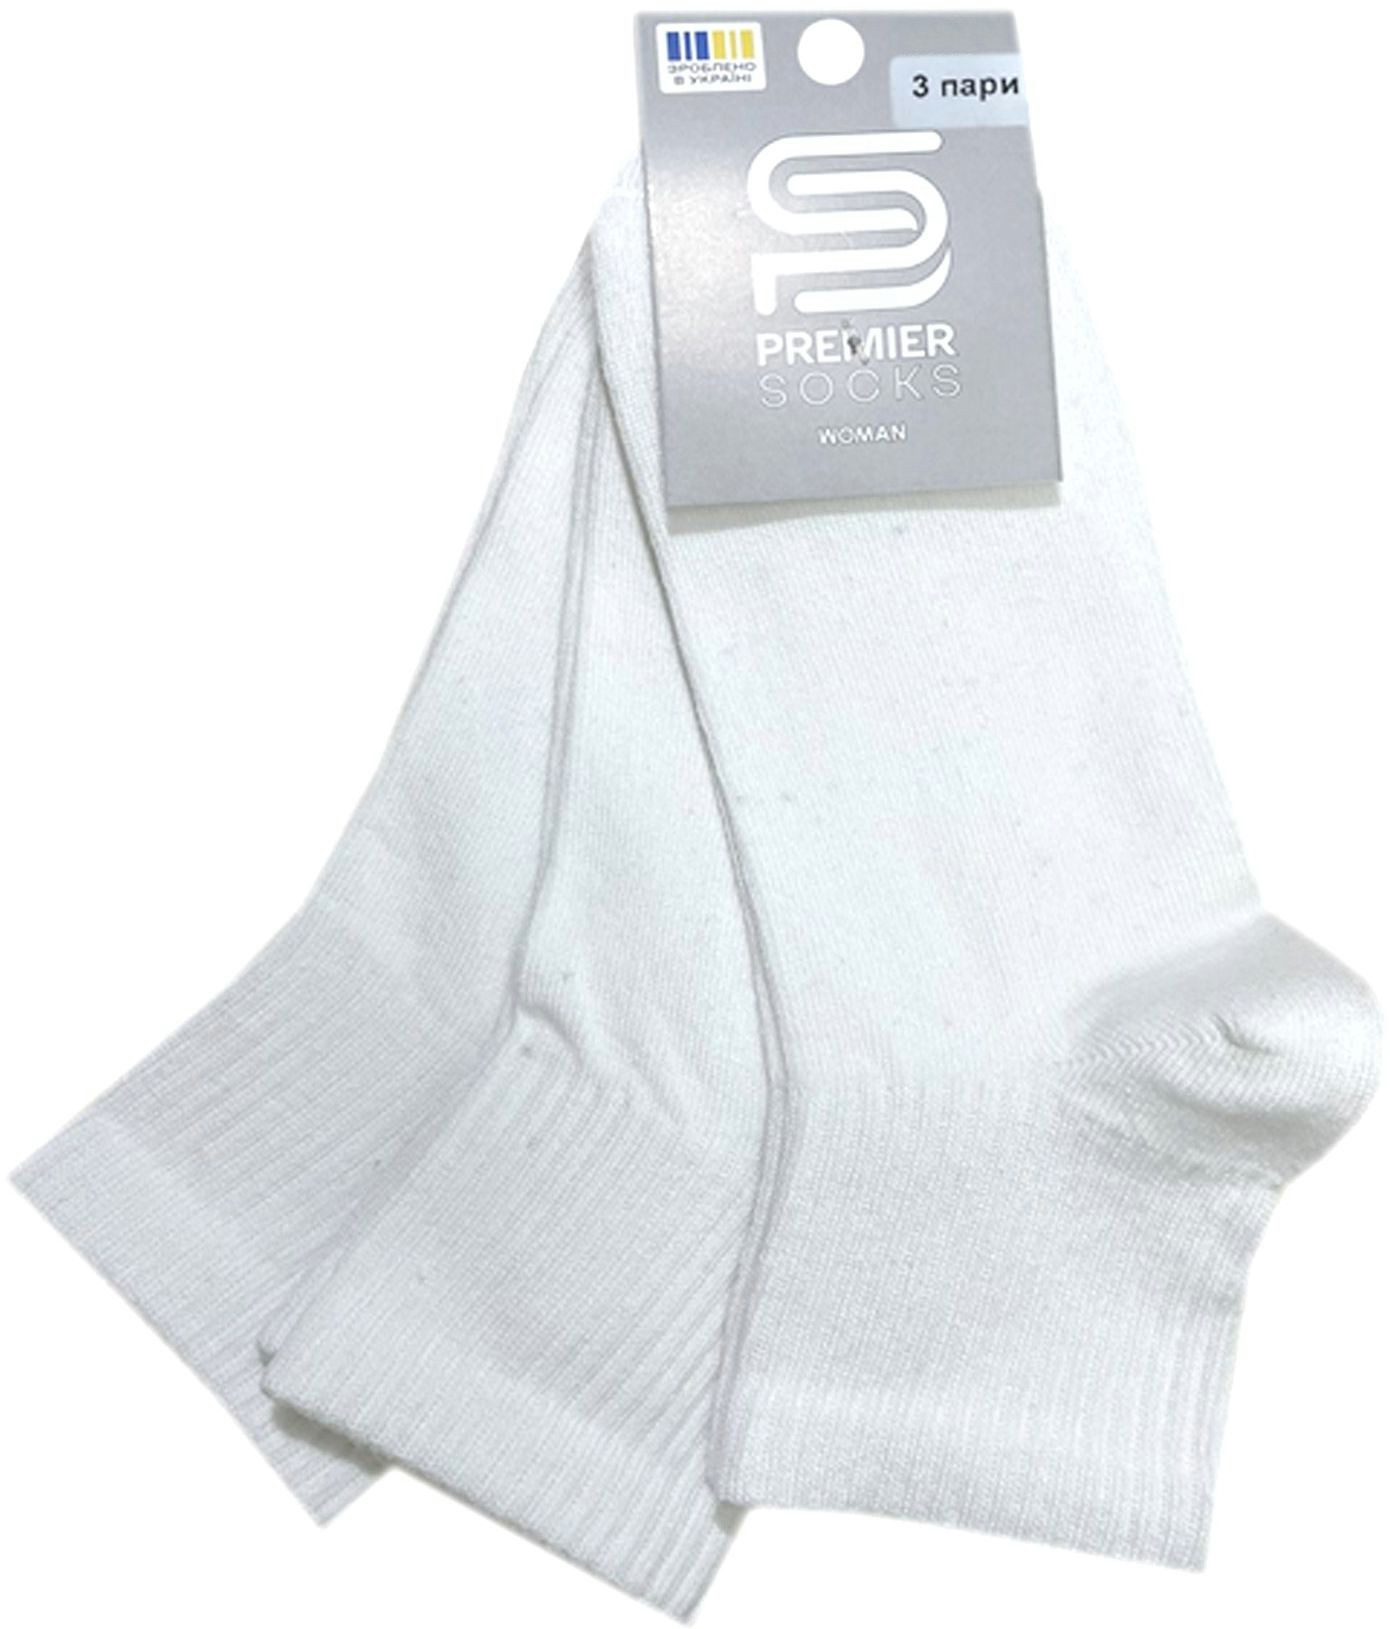 Набор носков женских Premier Socks 36-40 3 пары белые (4820163319384) фото 3